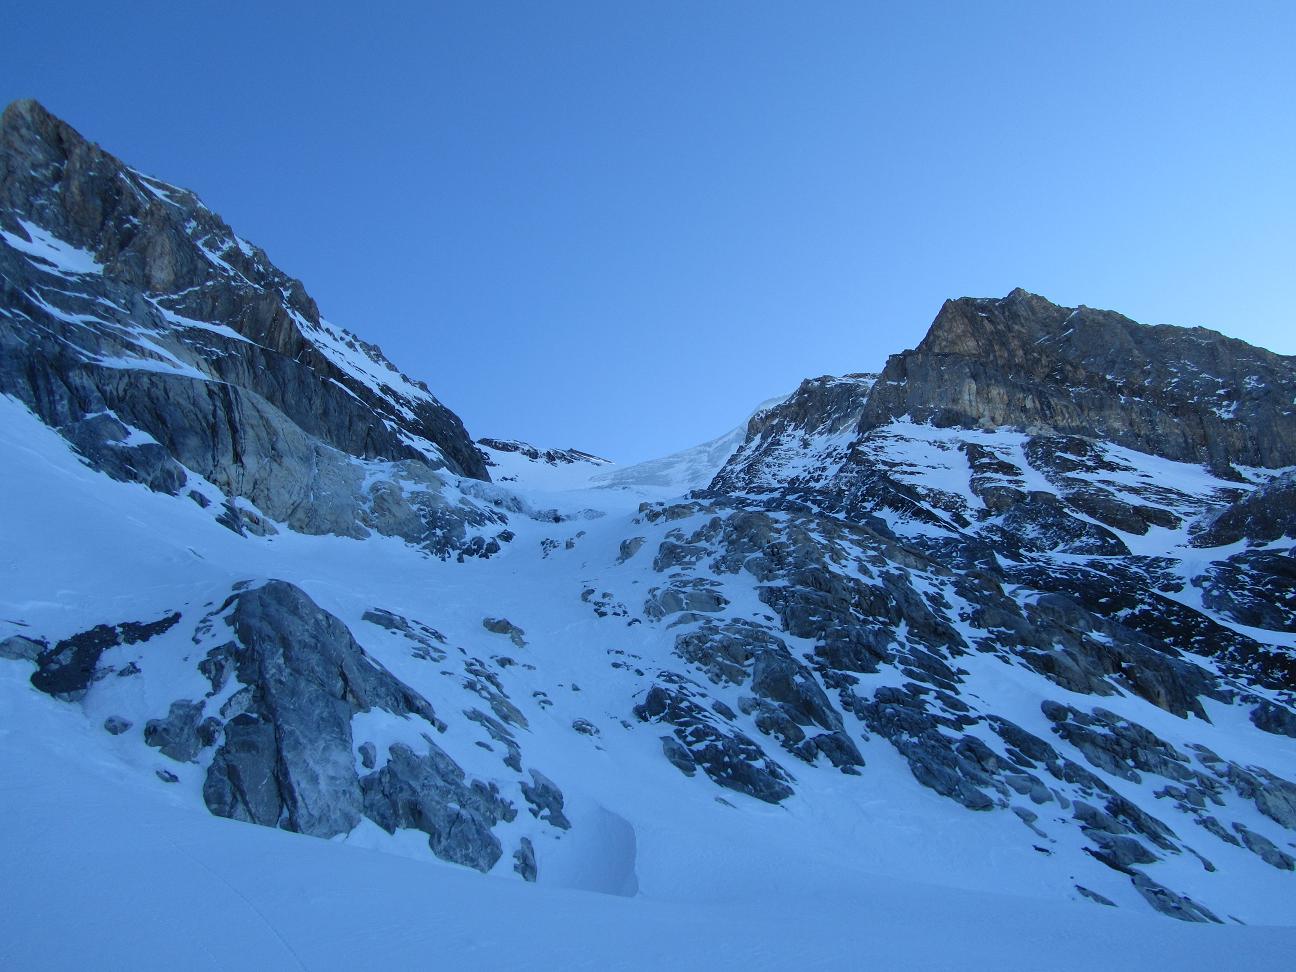 Grande Casse : Juste avant d'attaquer le Glacier, le petit couloir du topo se passe facilement